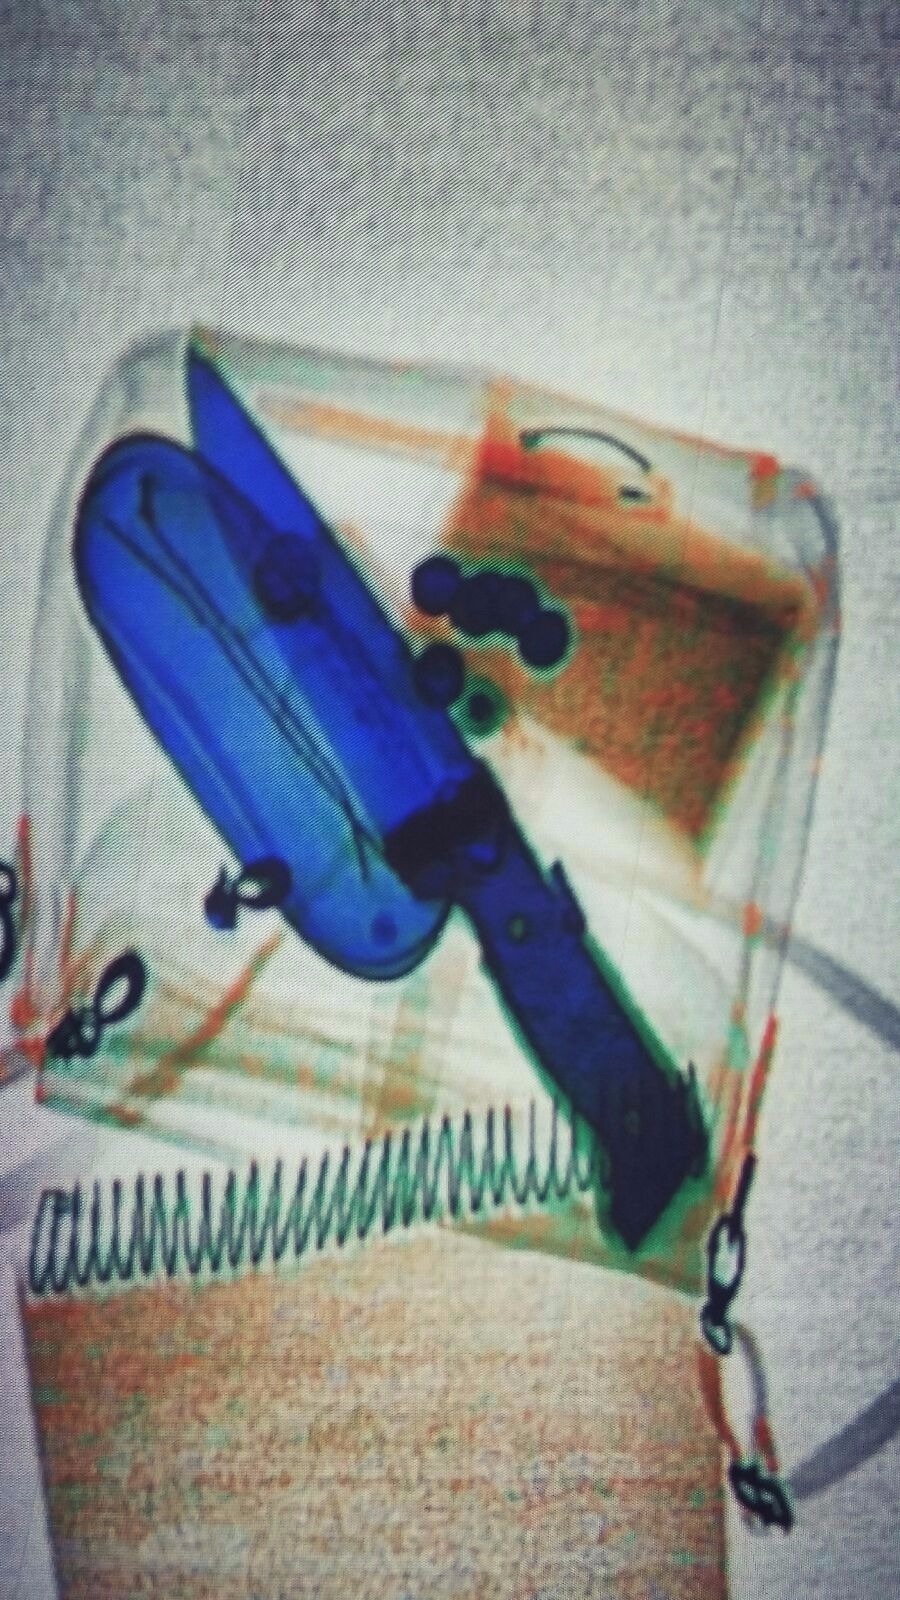 הסכין בתוך התיק המועבר בשיקוף (גדוד ארז)